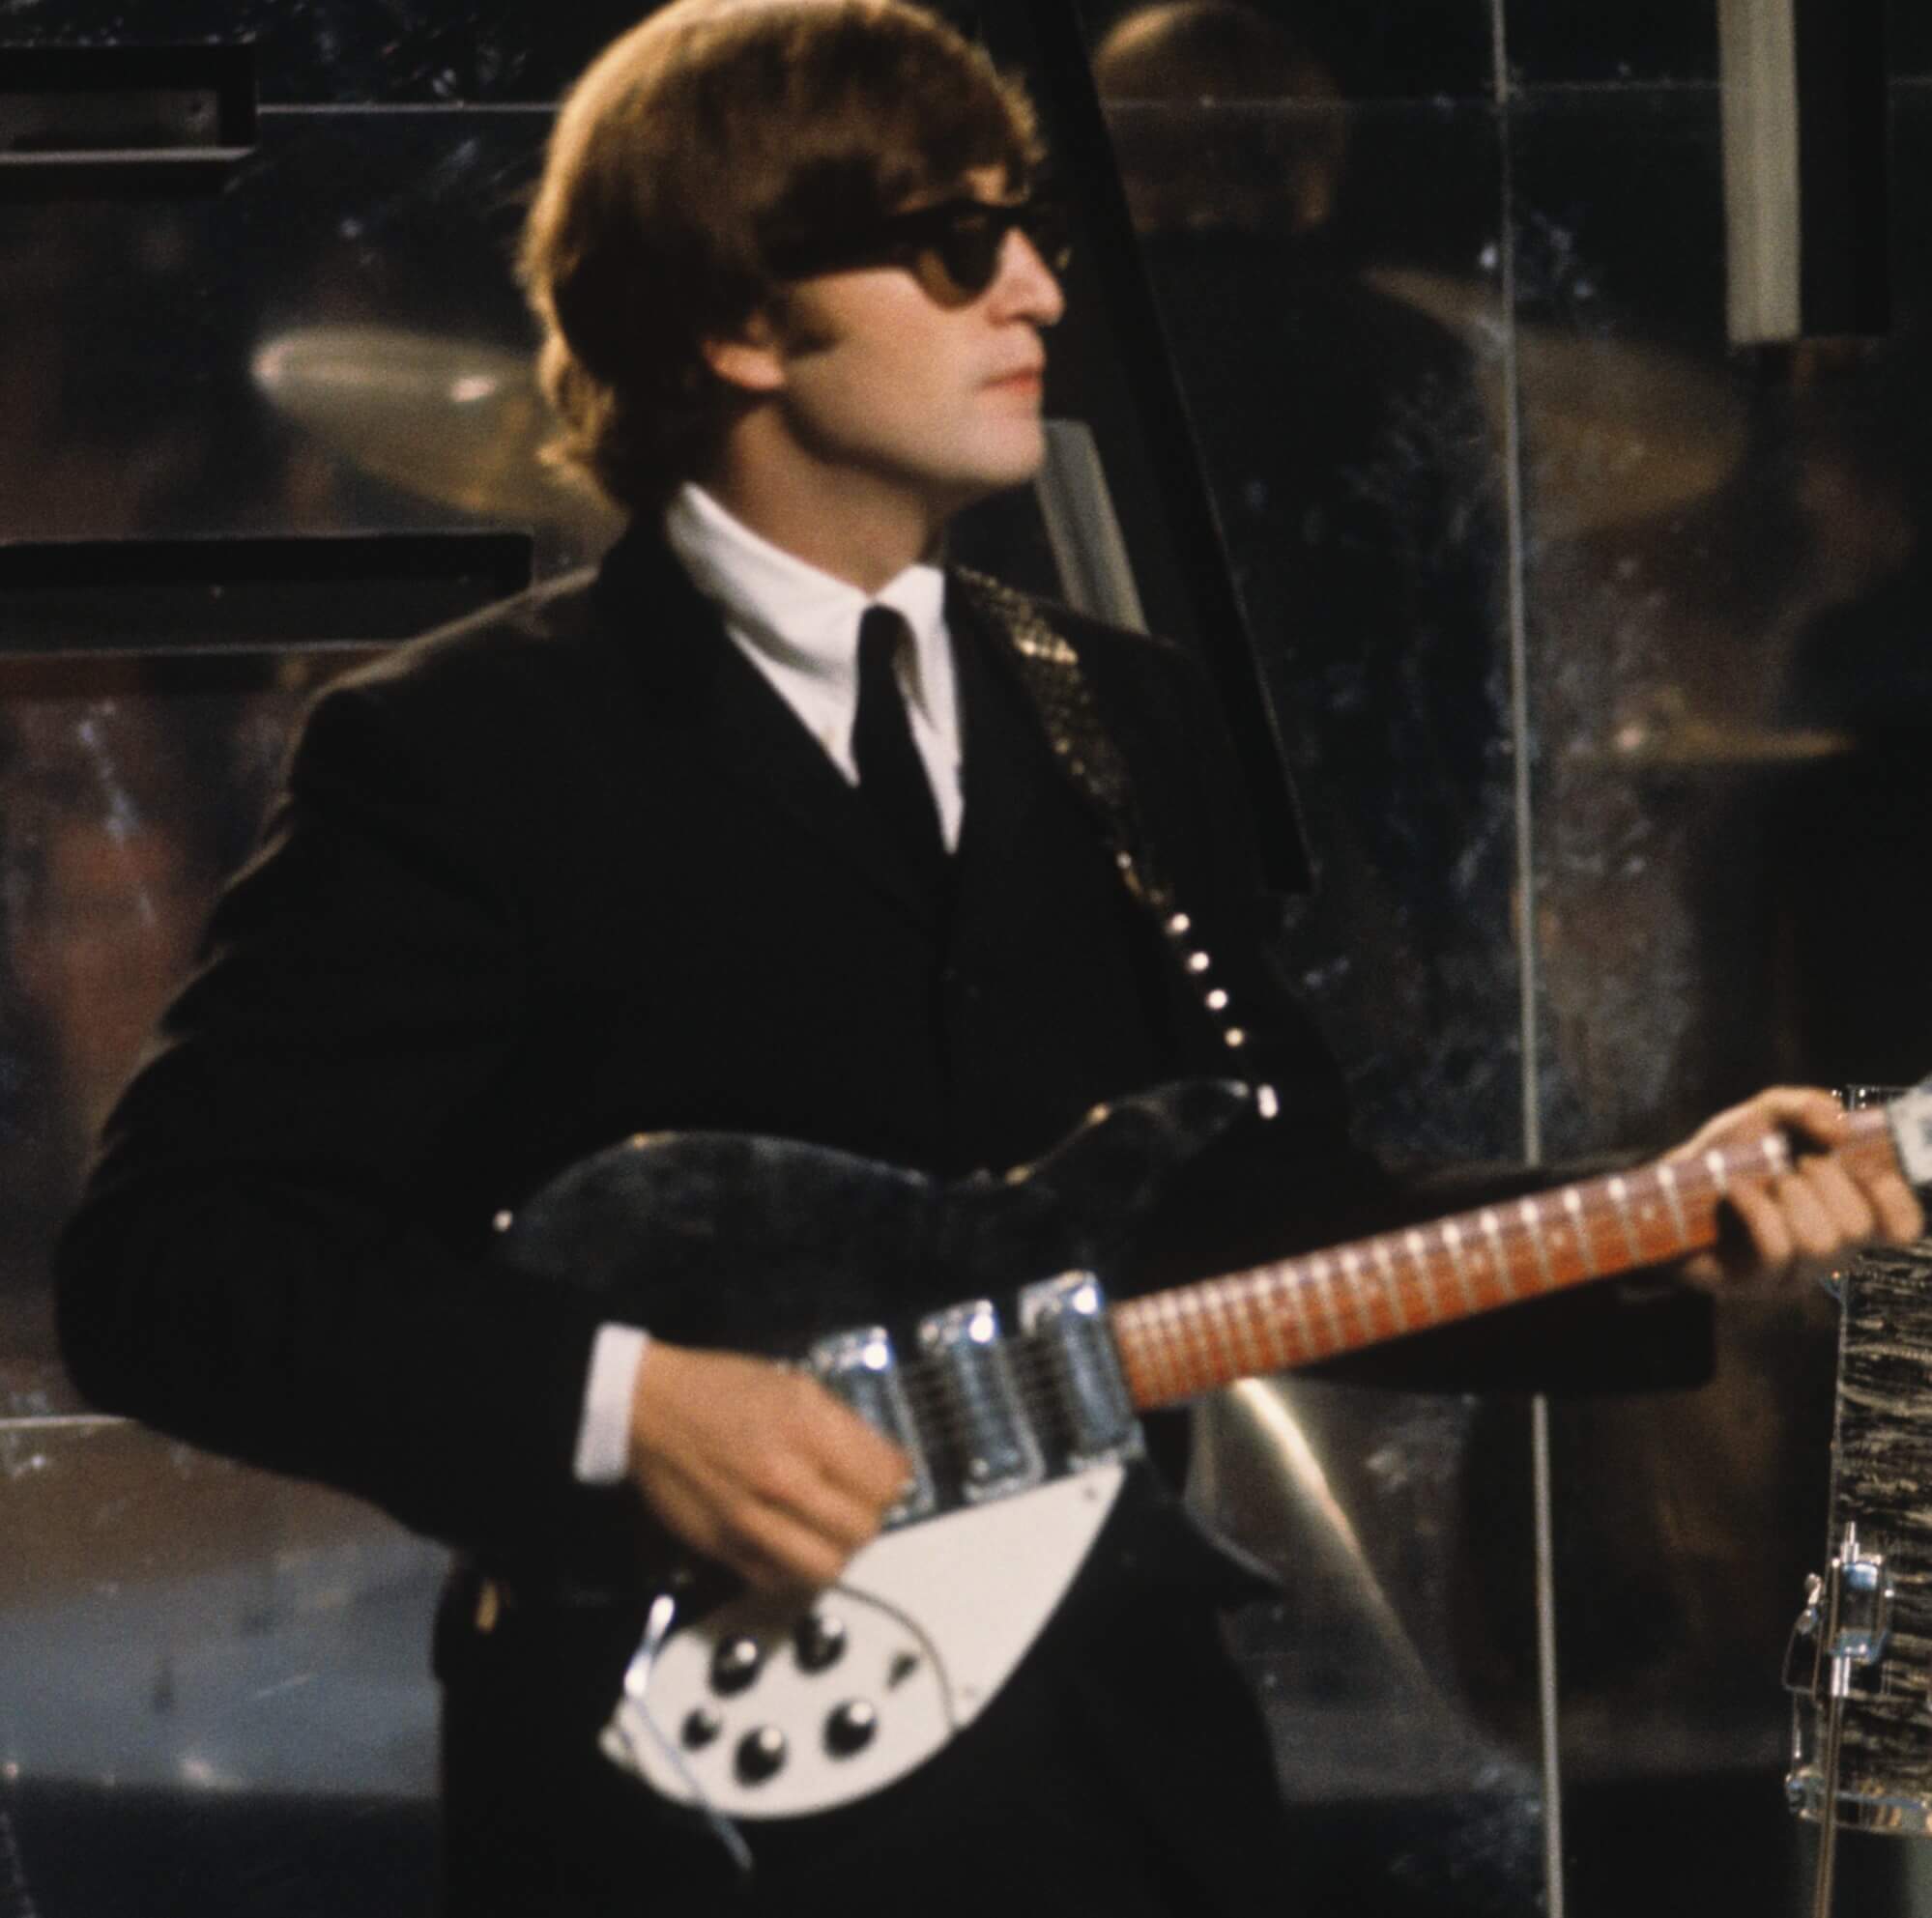 John Lennon wearing glasses